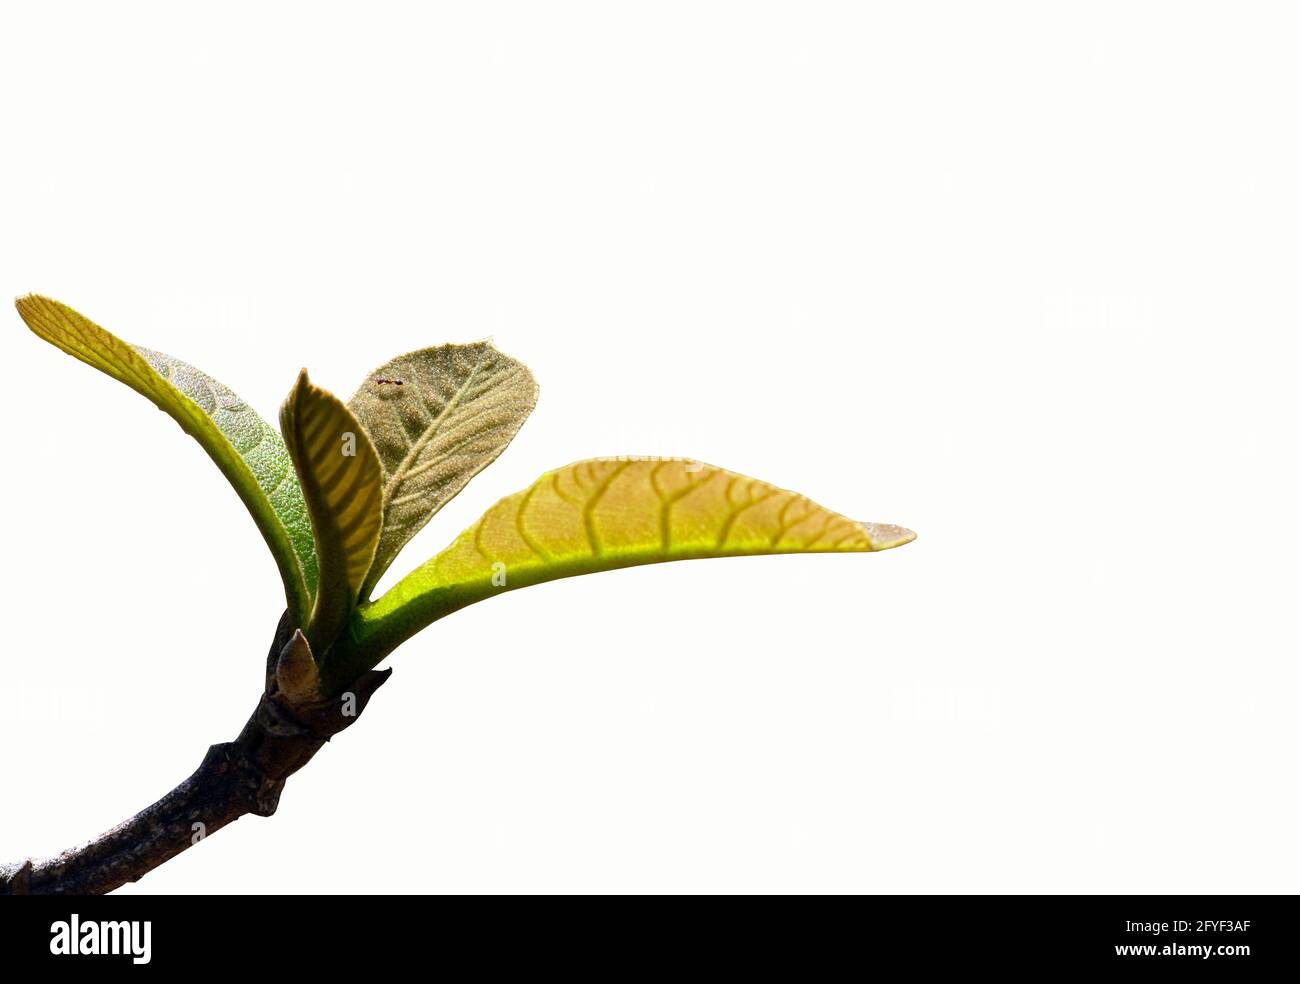 Primo piano di belle foglie giovani della pianta di teak (Tectona grandis) e una formica, fuoco selezionato, isolato su sfondo bianco Foto Stock